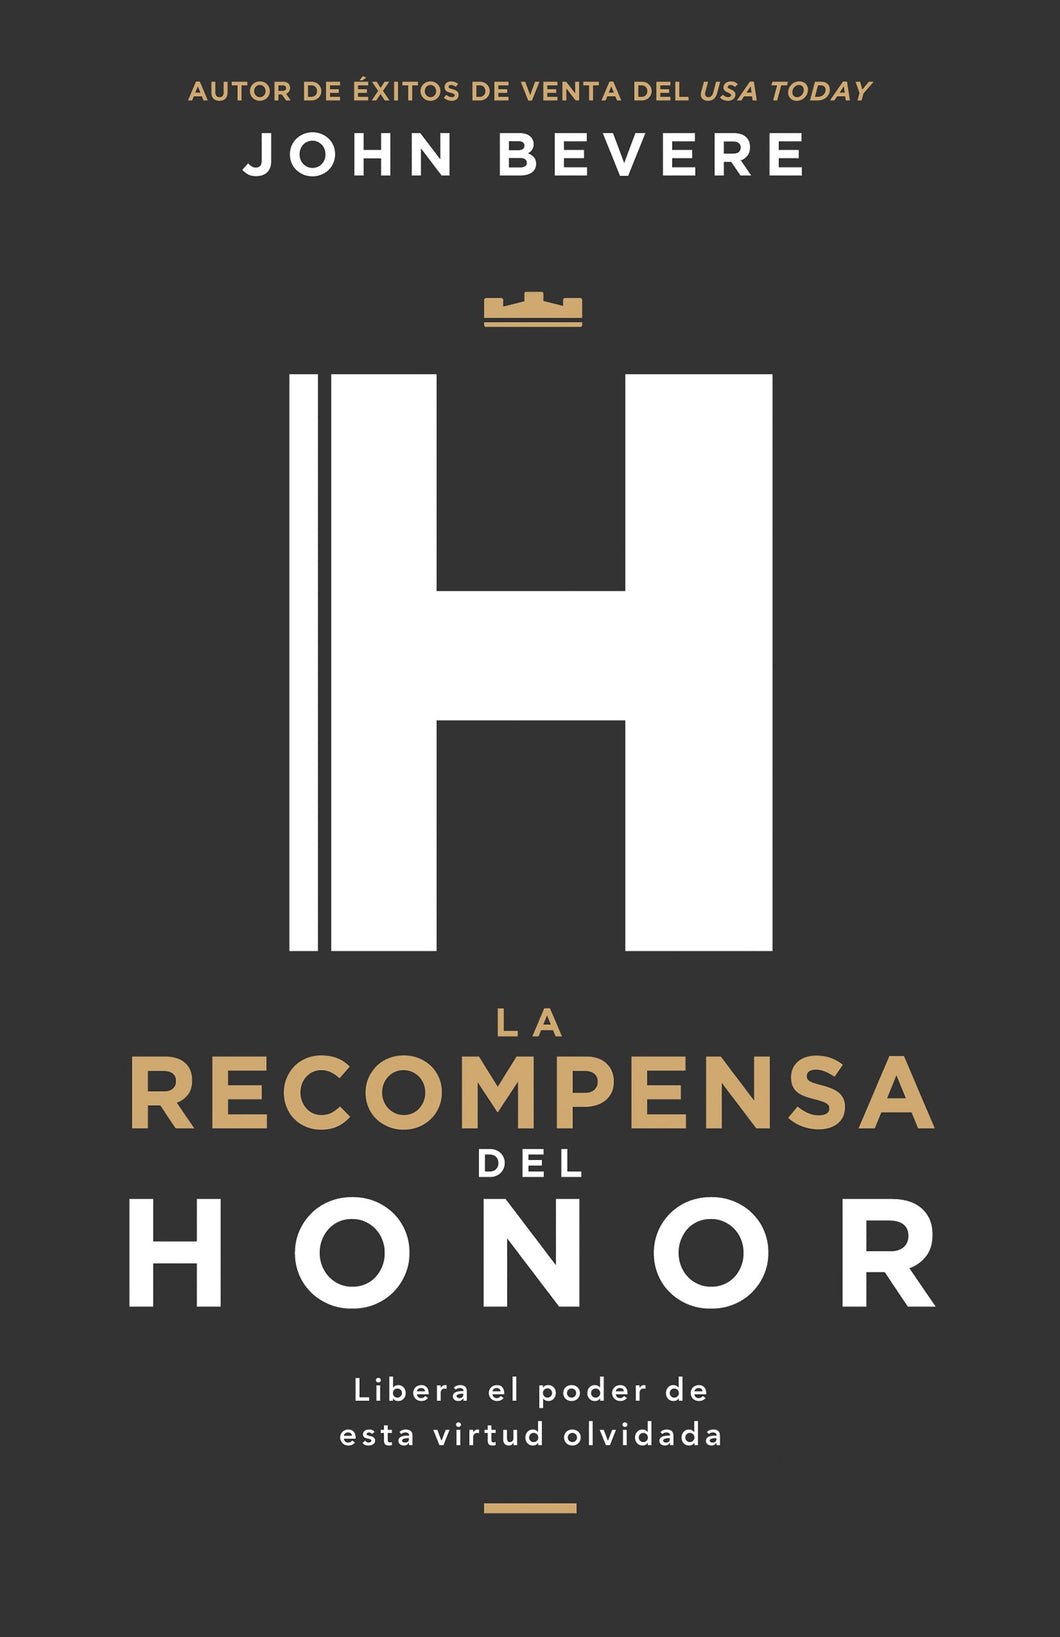 Spanish-Honors Reward